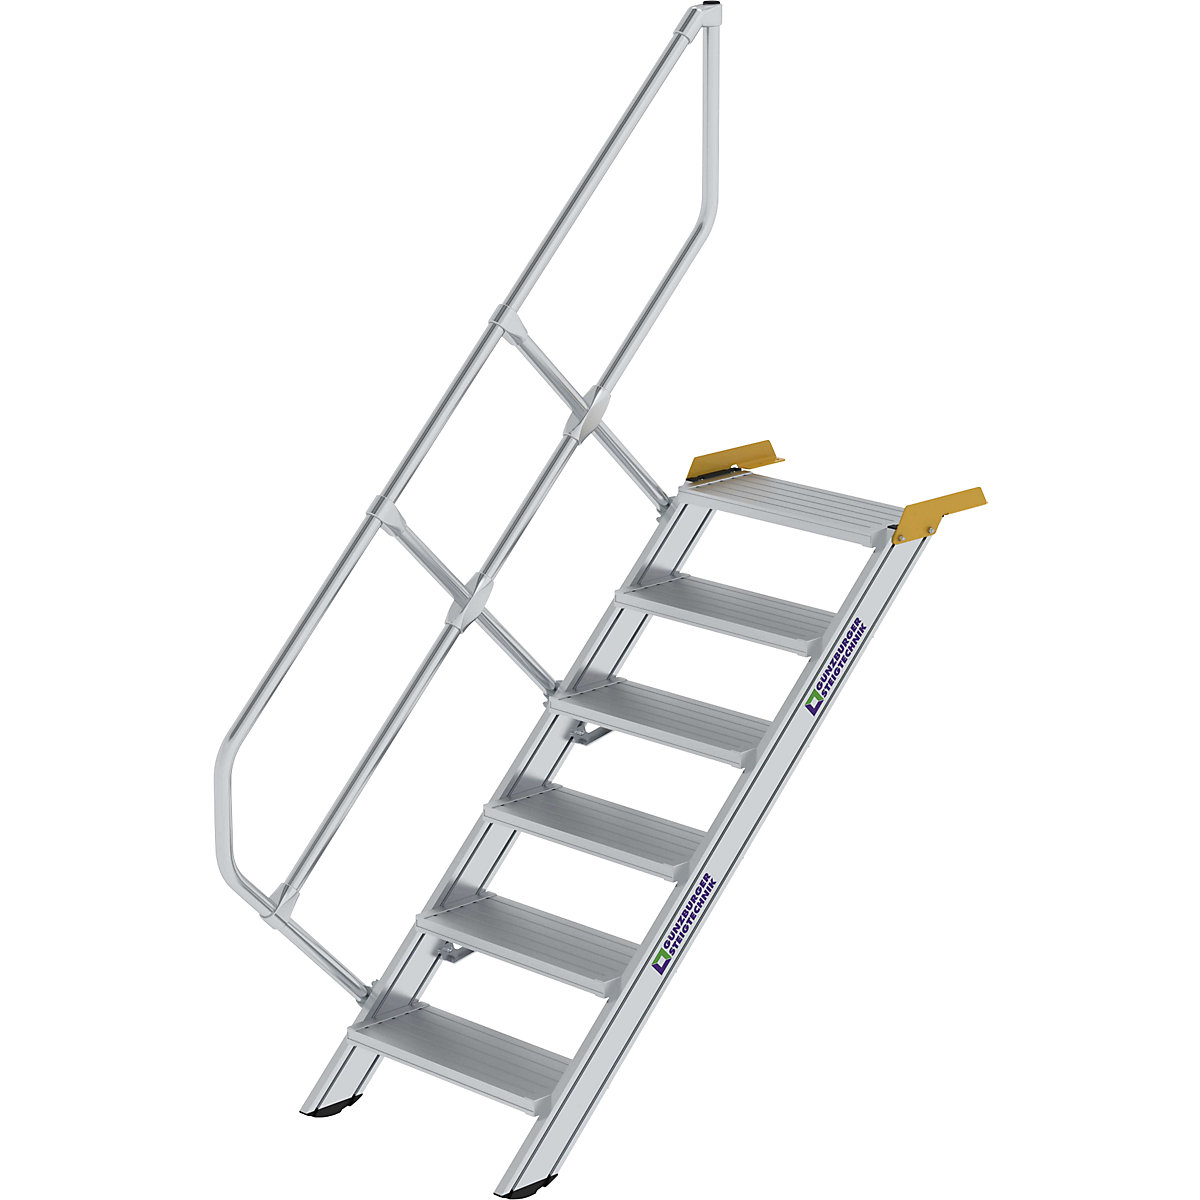 Industrijske stopnice – MUNK, aluminijaste stopnice širine 800 mm, 6 stopnic-4